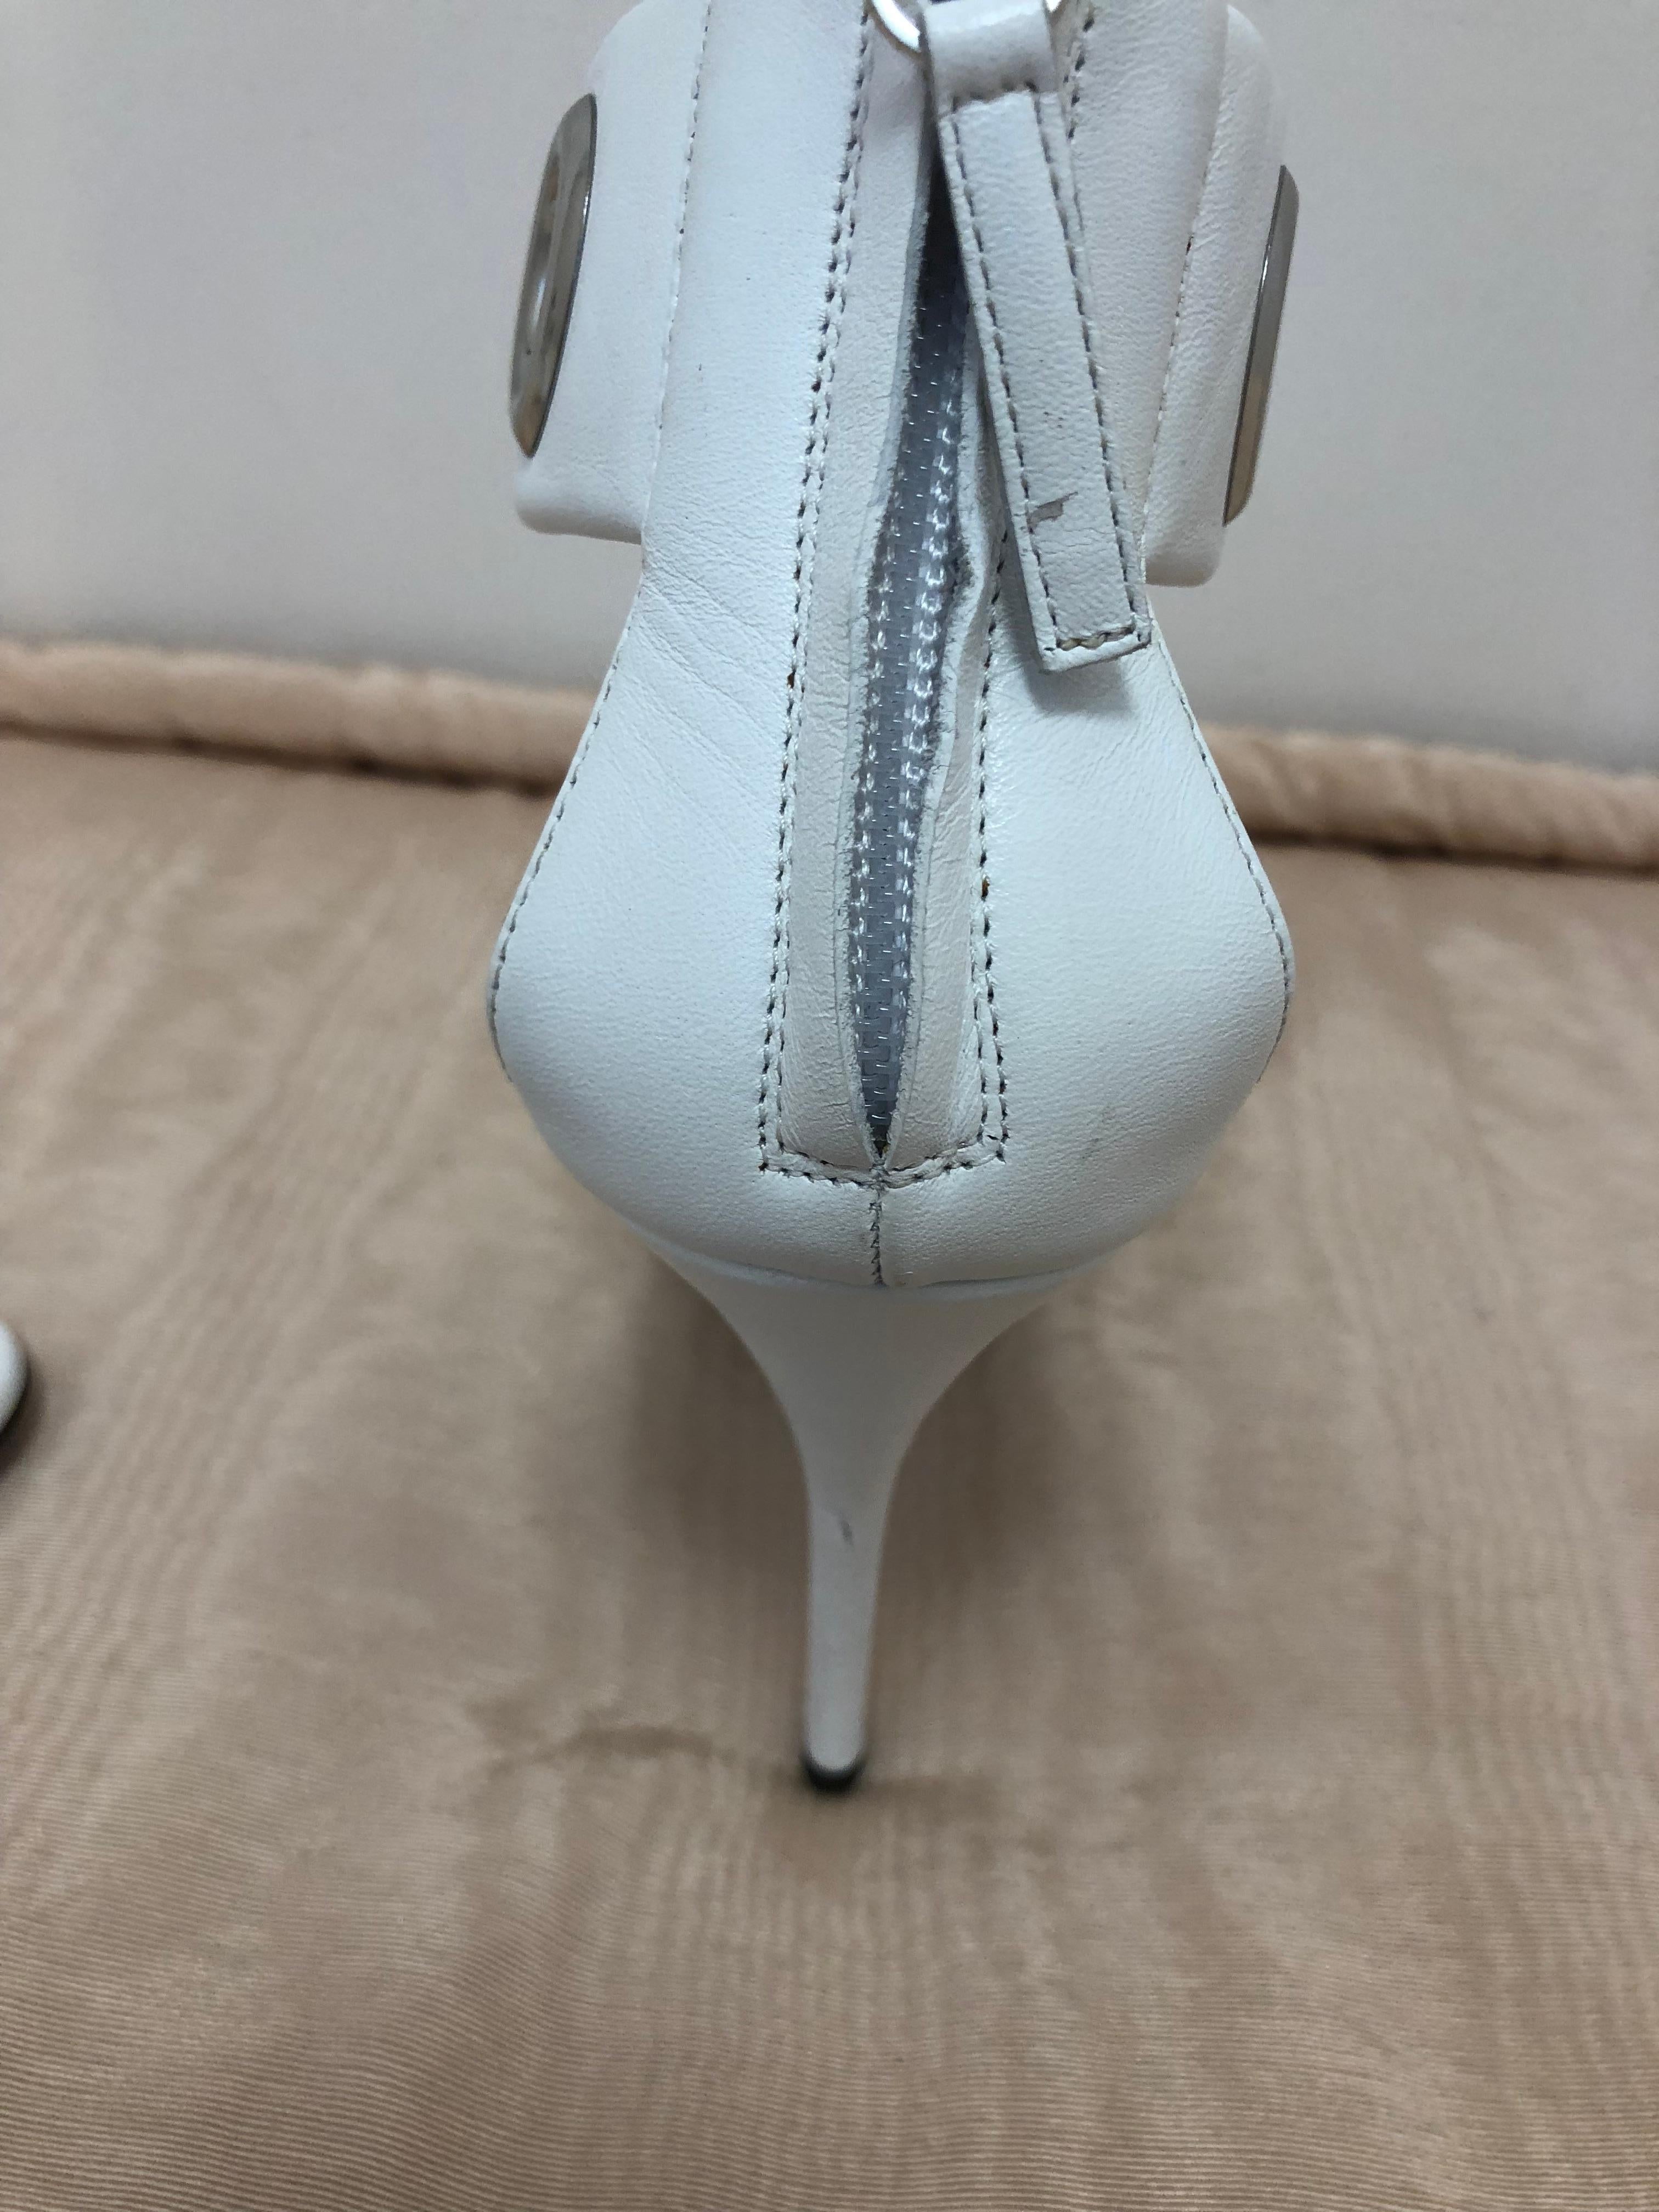 Giuseppe Zanotti White Grommet Stiletto Sandals 37.5 For Sale at ...